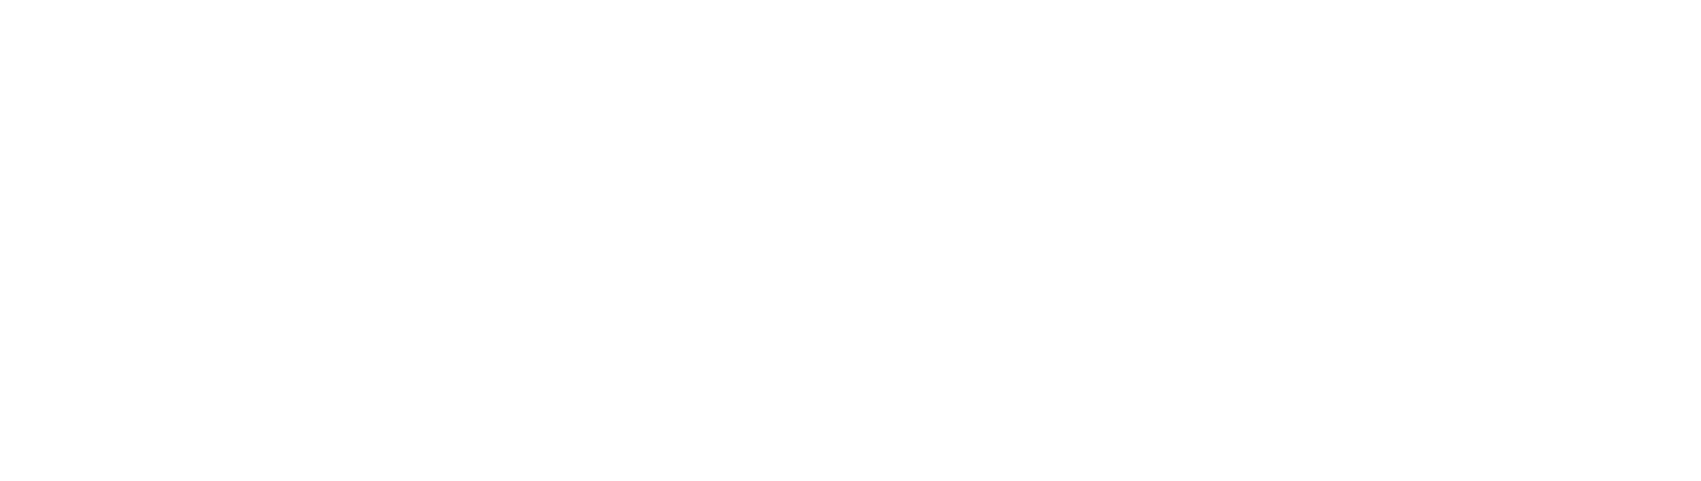 Centre Mèdic i Pediàtric Gemma Morera